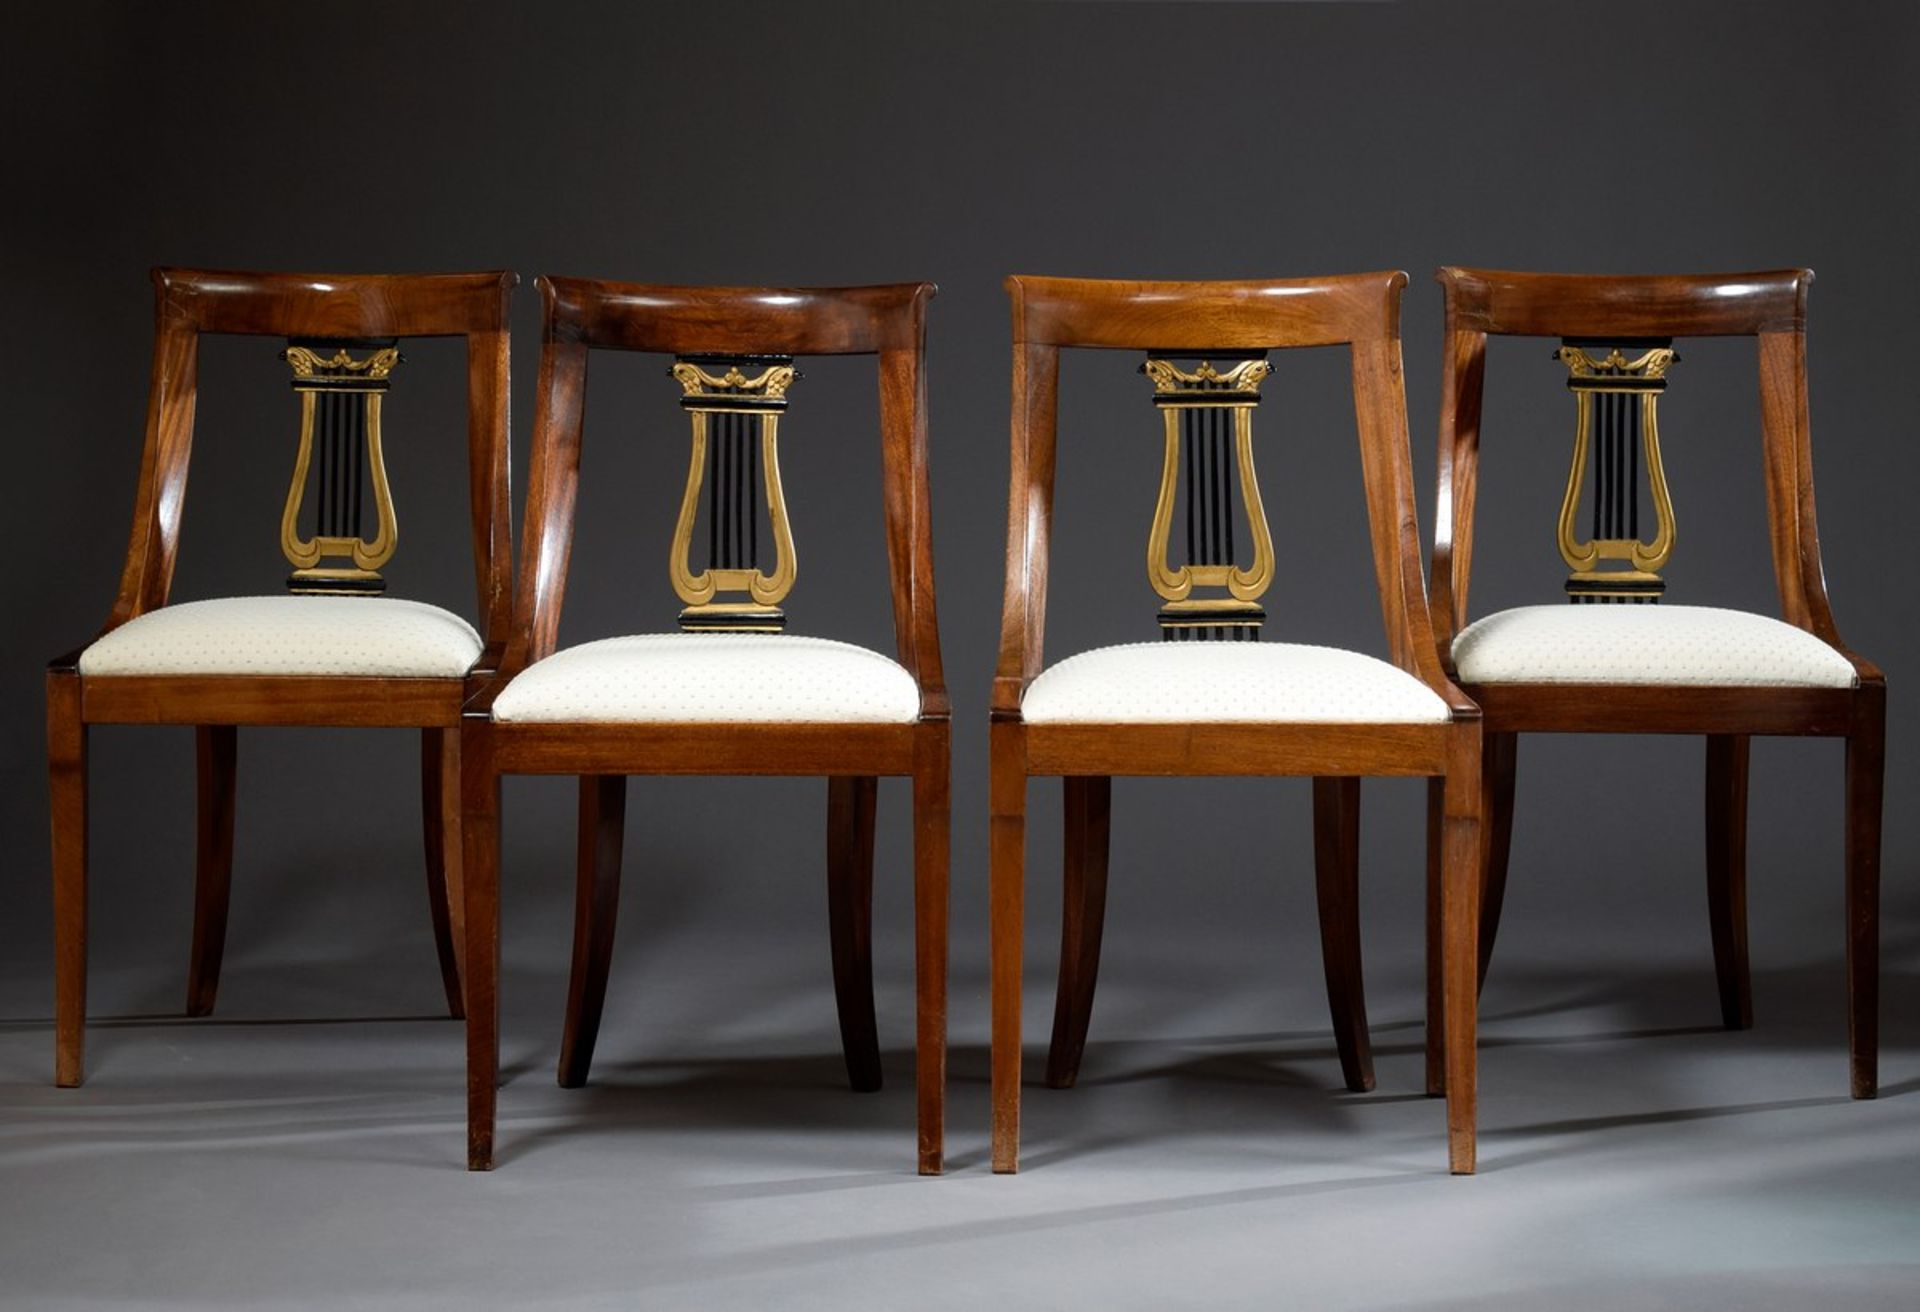 4 Stühle im Empire Stil mit geschnitztem Lyramotiv in der Lehne und hellen Sitzpolstern, Nussbaum, - Image 2 of 8